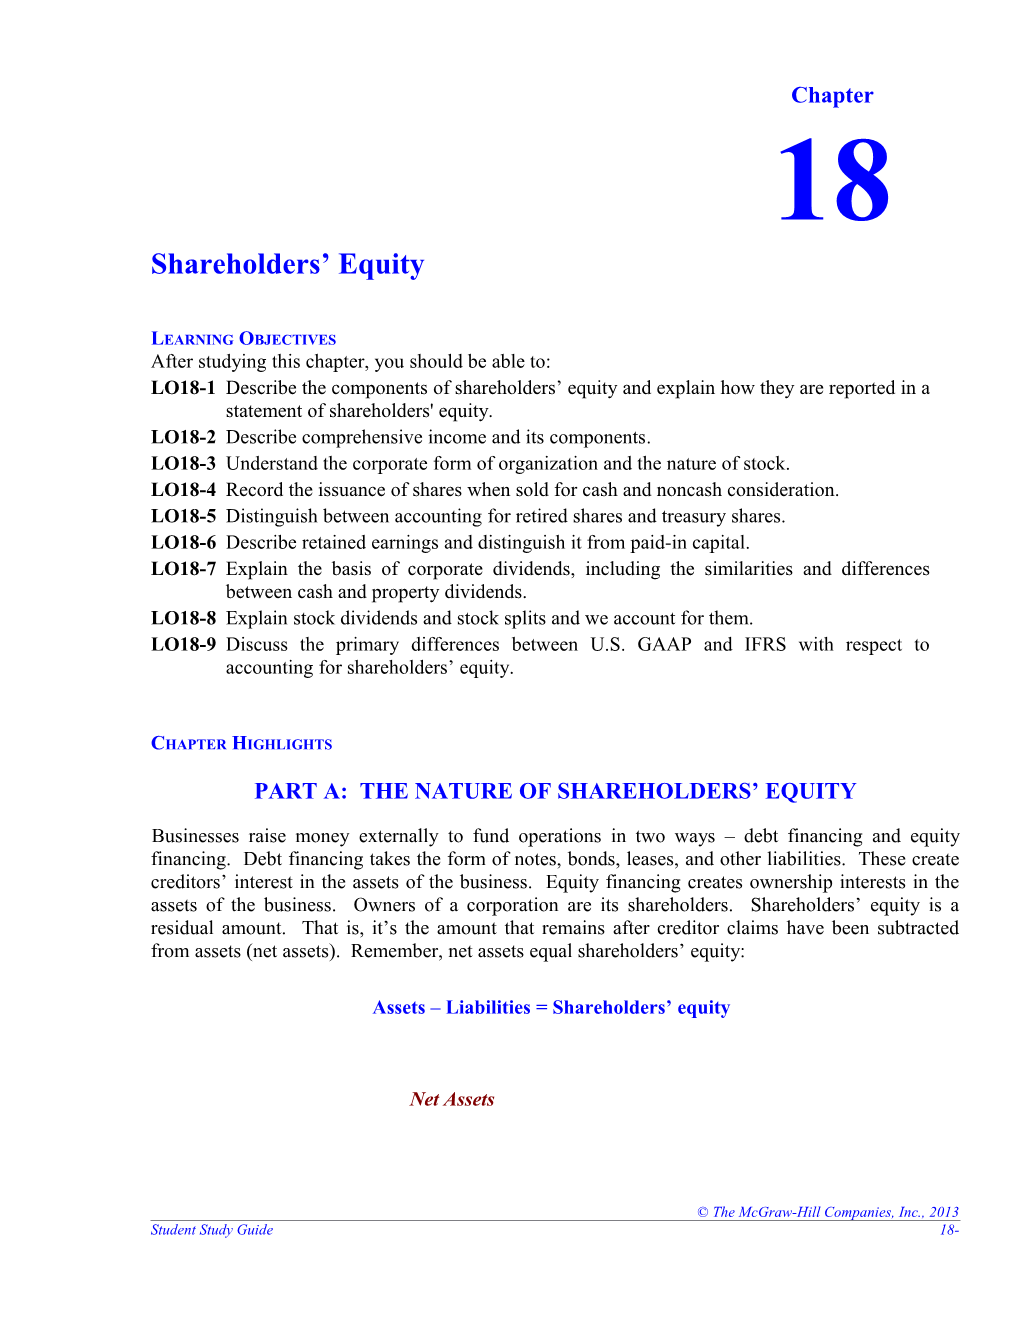 Shareholders Equity